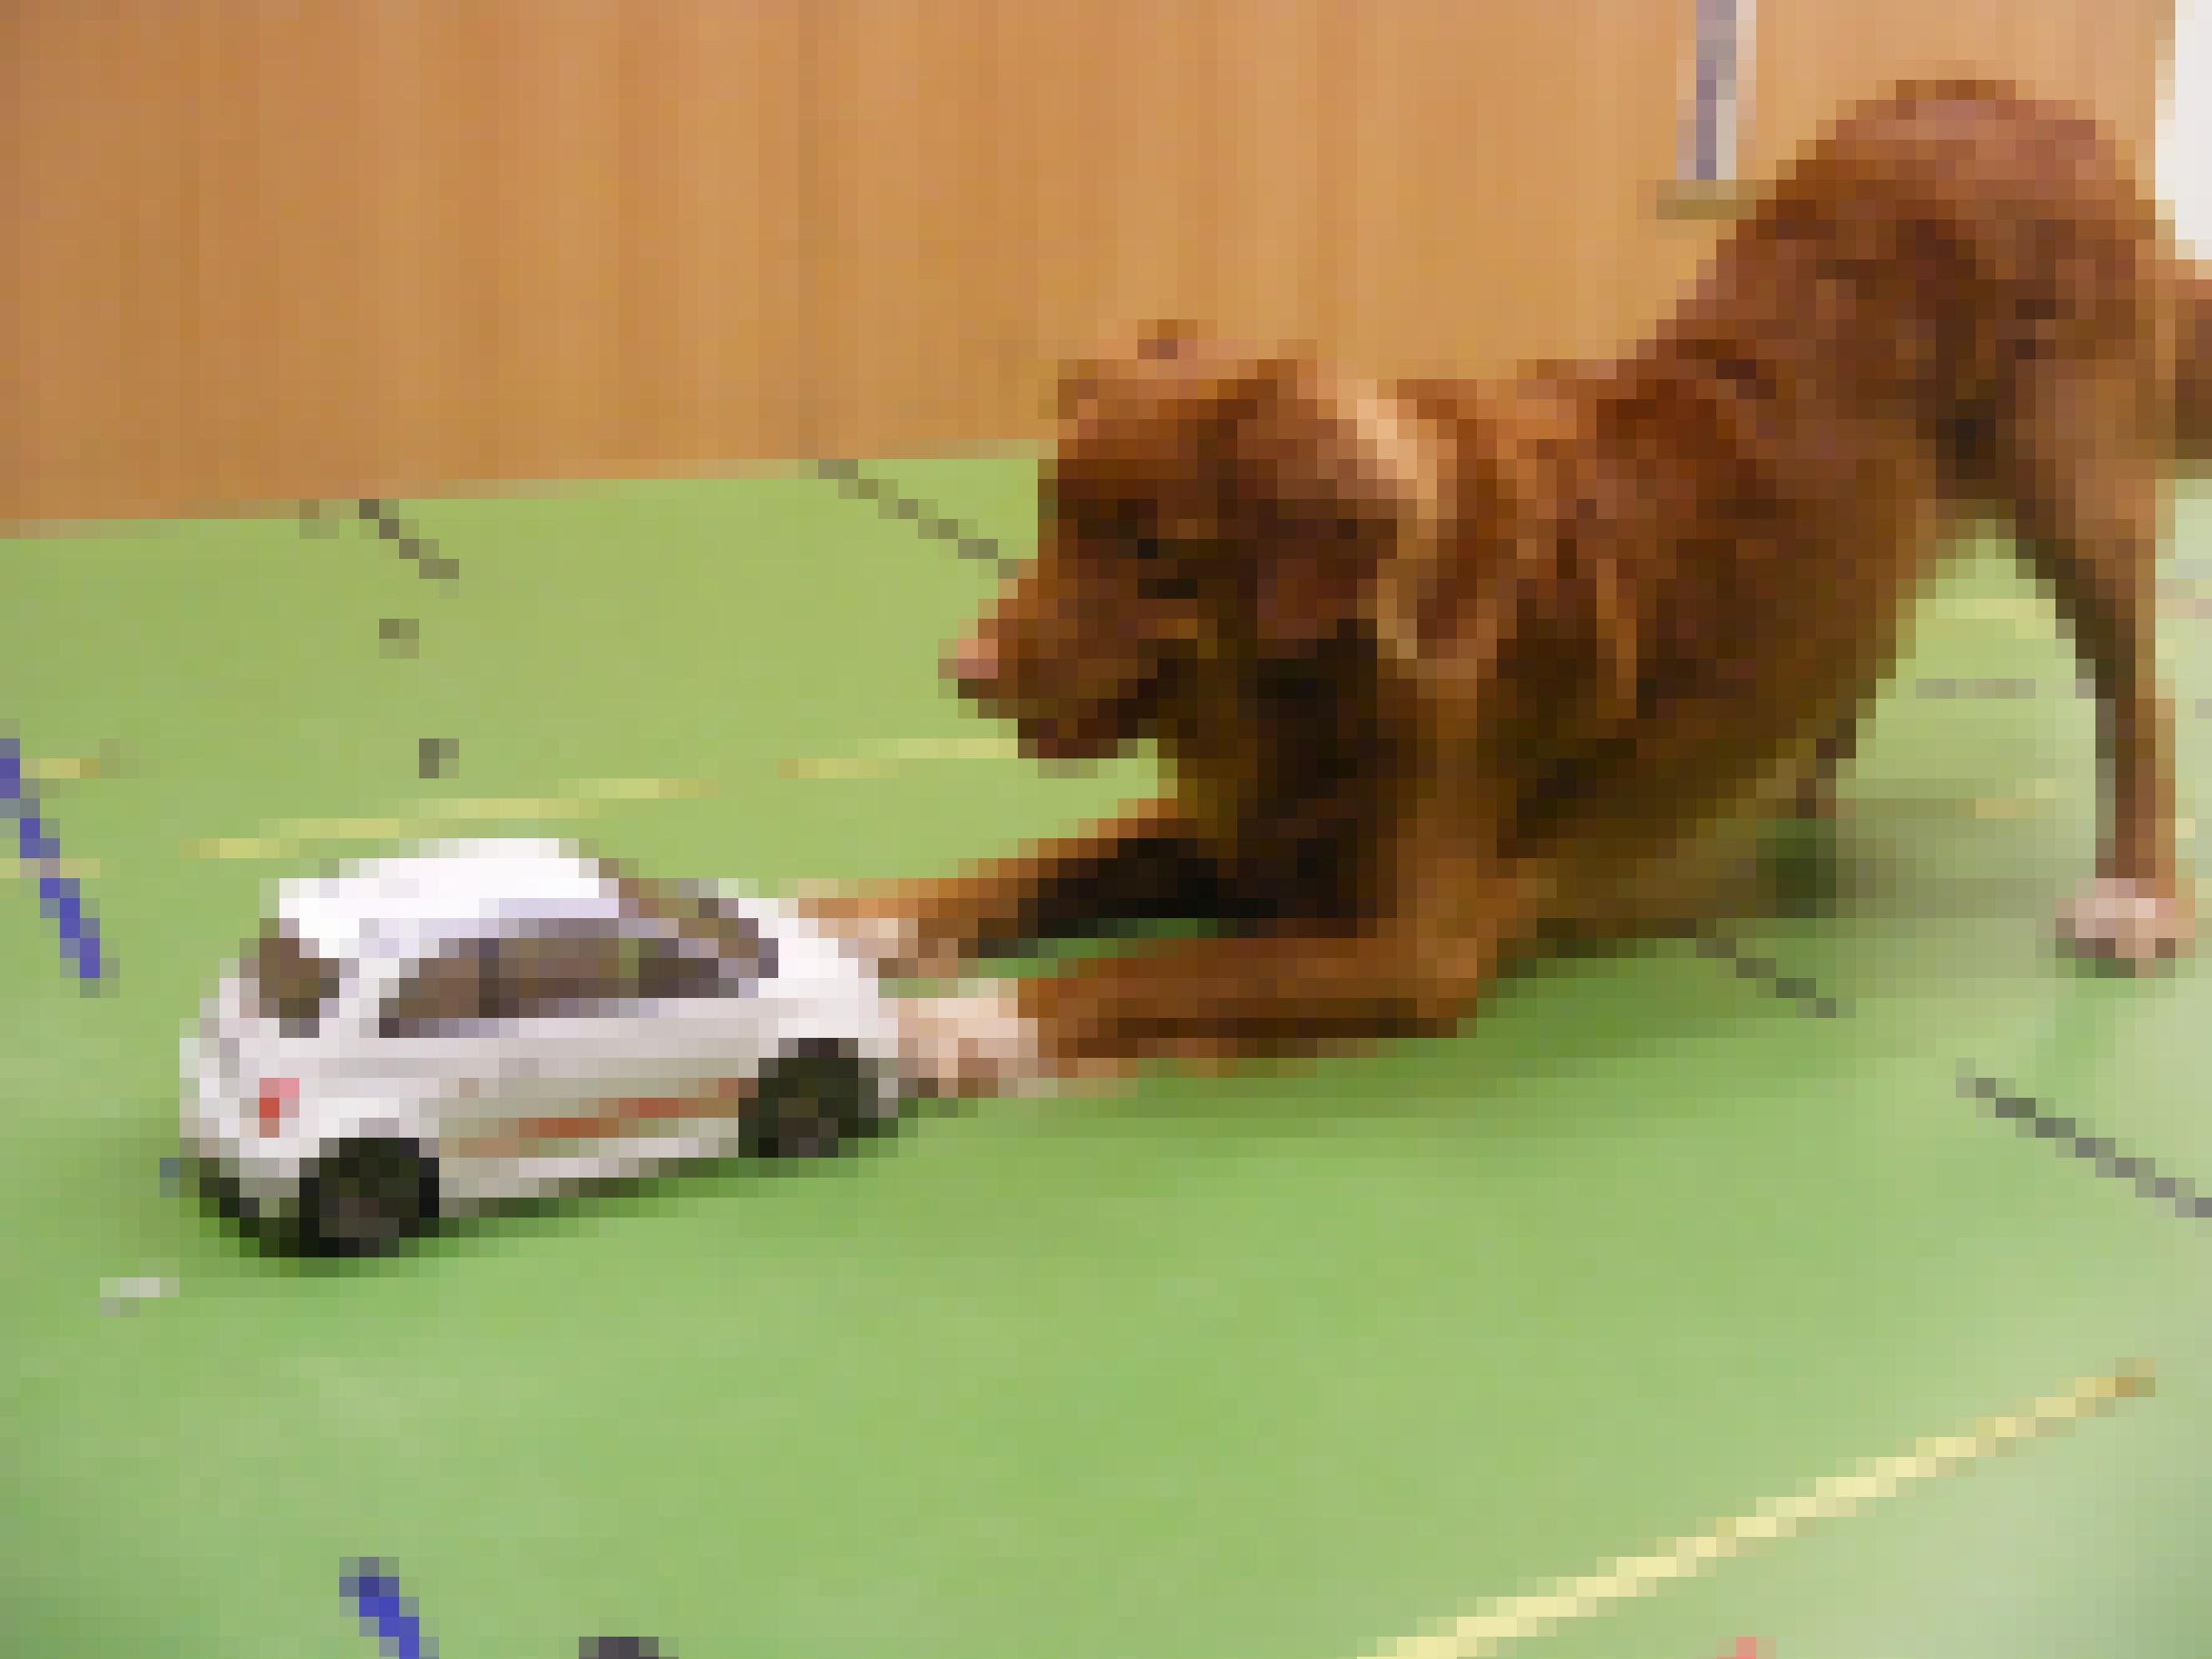 Ein Hund mit rotem Fell beugt seinen Oberkörper vor einem Spielzeugauto